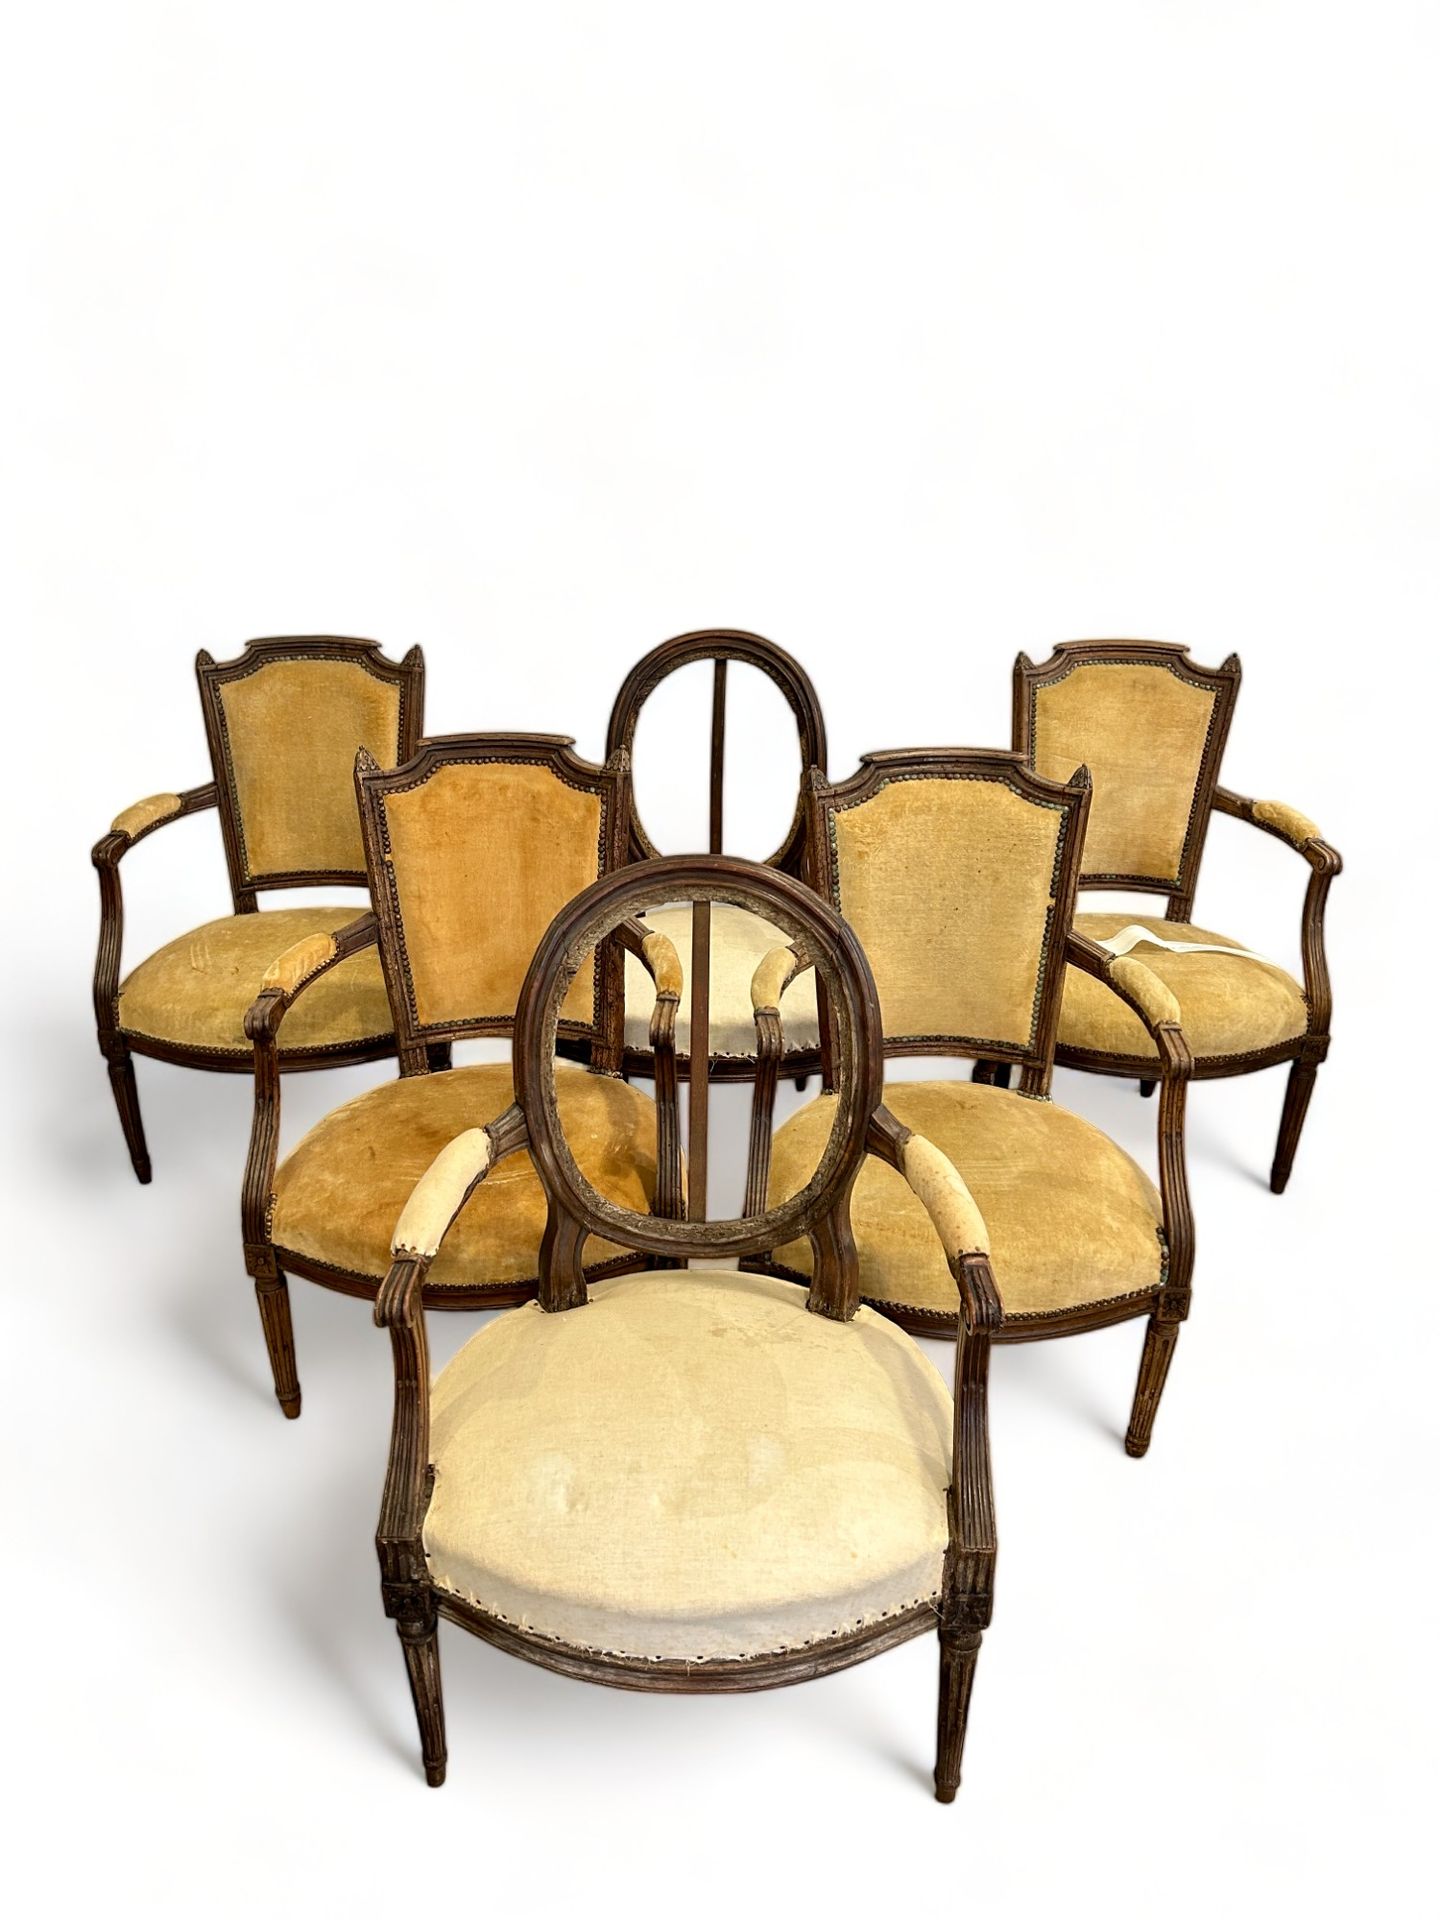 Null 一套 6 张胡桃木卡布里奥莱扶手椅，其中两张带有奖章靠背。
其中一些出自路易十六时期。
高 92 厘米。长 57 厘米。深 50 厘米。
有损坏，尤其&hellip;